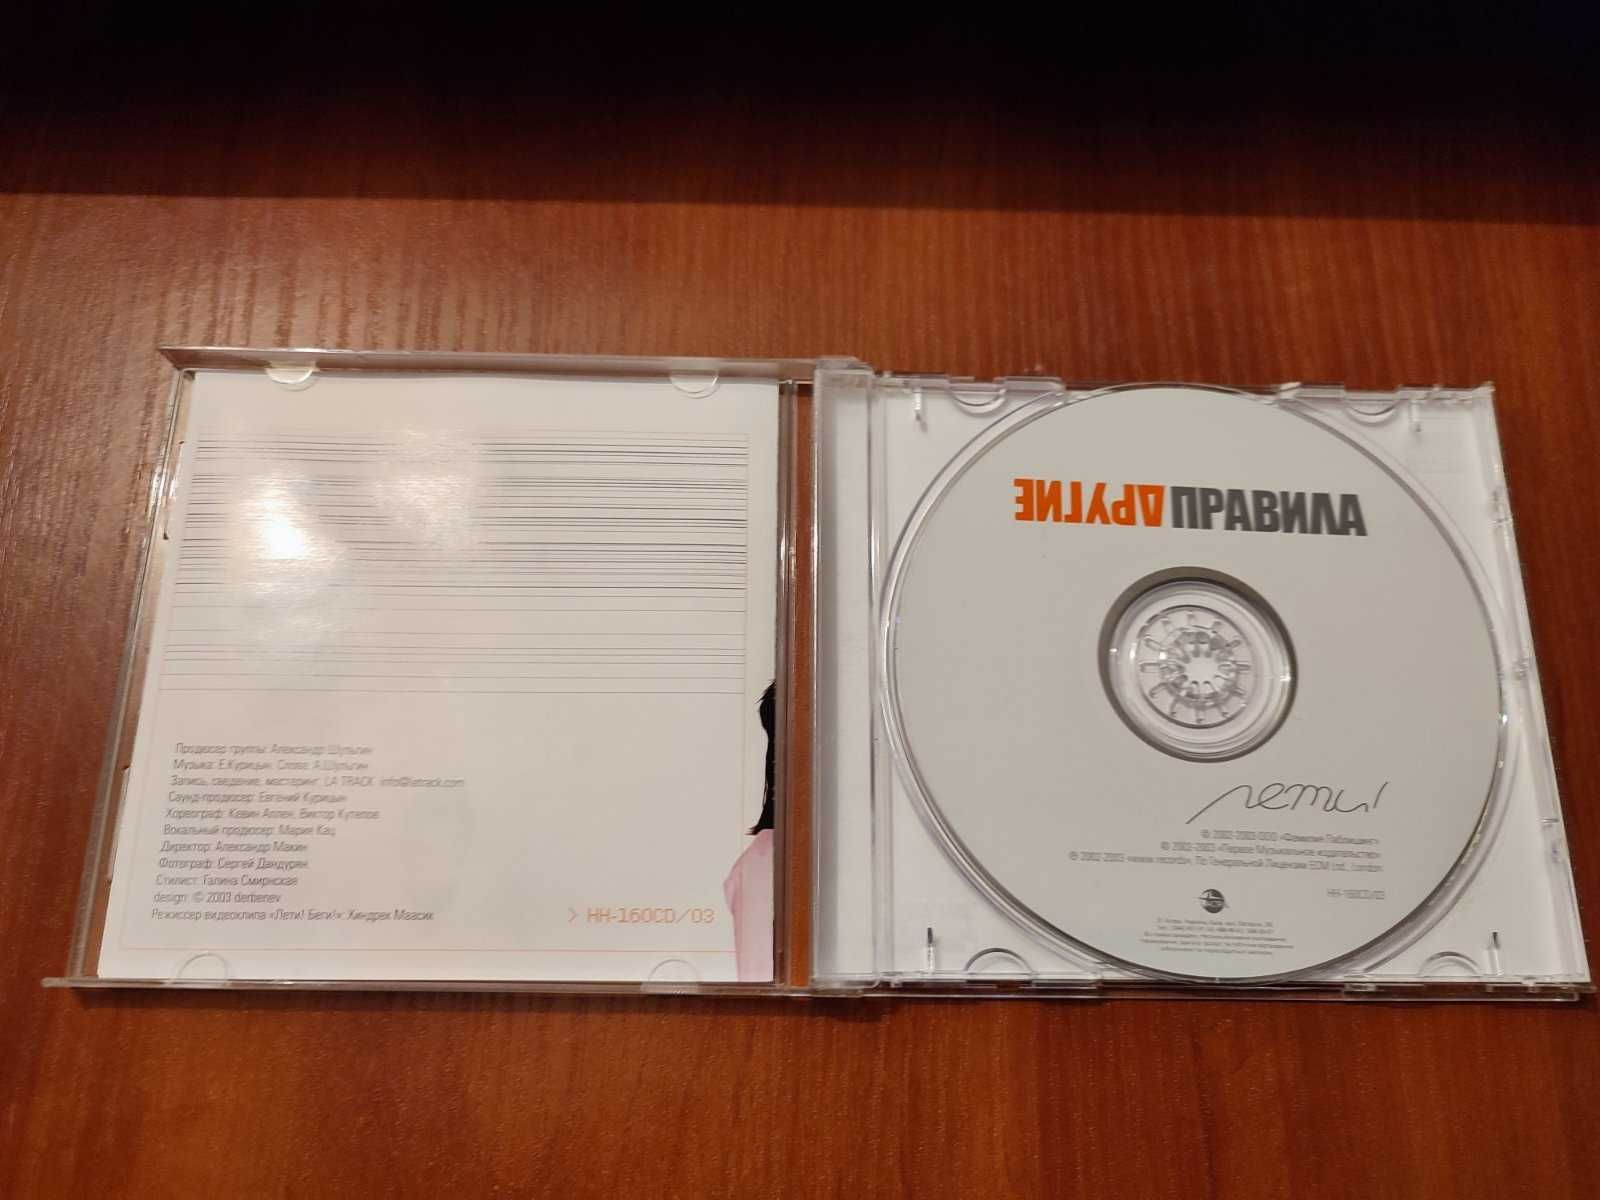 Музыкальный CD Другие Правила альбом Лети 2002 год.